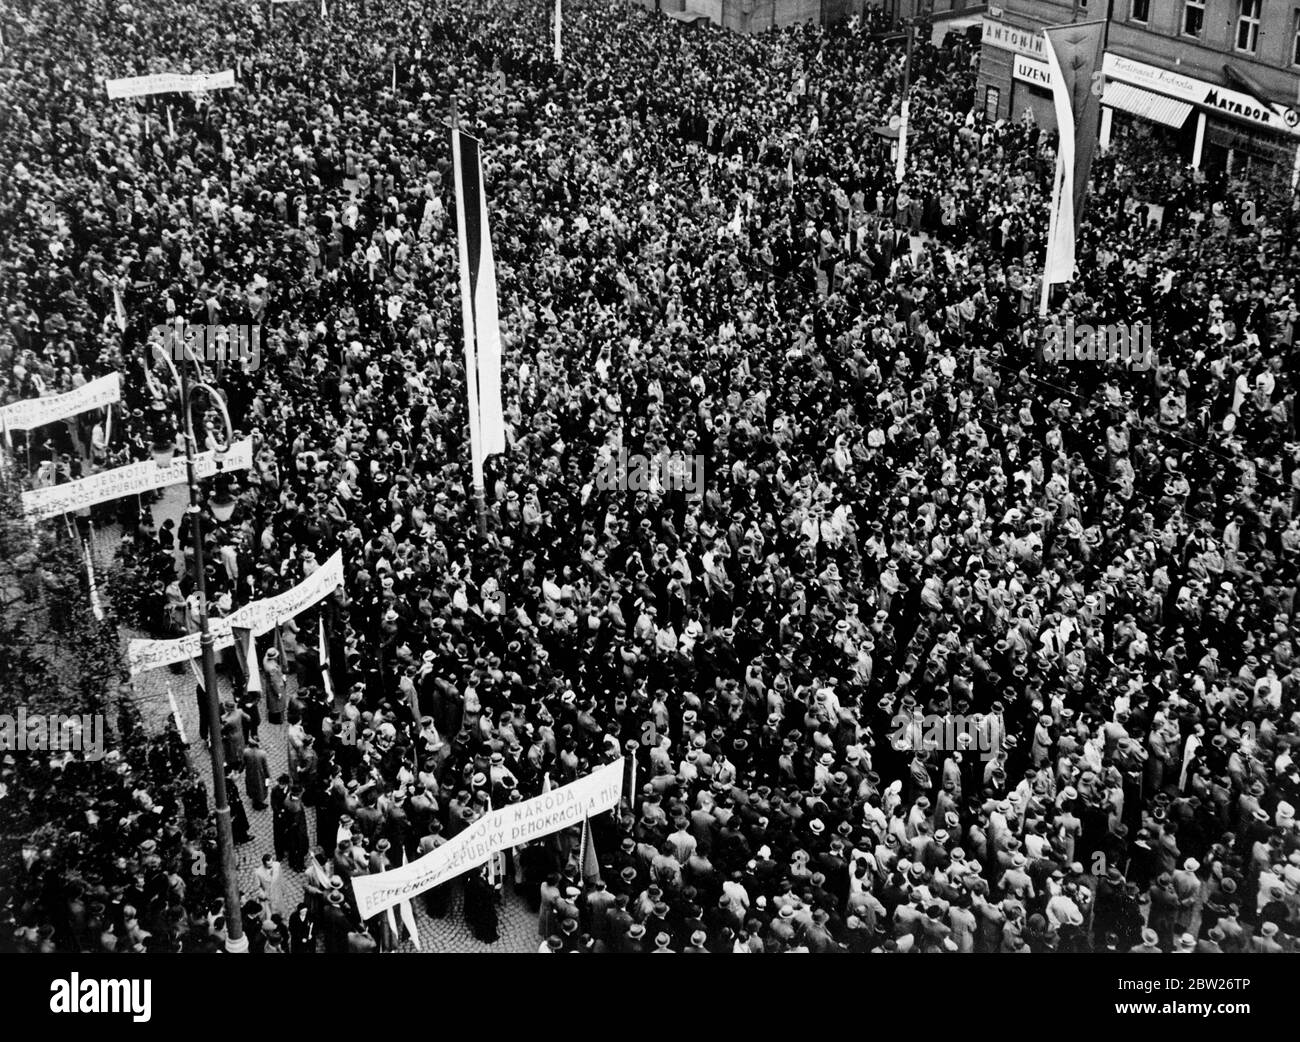 Dimostrazione di 200,000 persone a Praga come risposta ai tedeschi Sudeti. Come controspinta alle manifestazioni dei tedeschi sudetesi, che hanno presentato al governo ceco richieste drastiche 200,000 persone hanno manifestato a Praga a sostegno dell'unità ceca e del governo democratico. 4 maggio 1938 Foto Stock